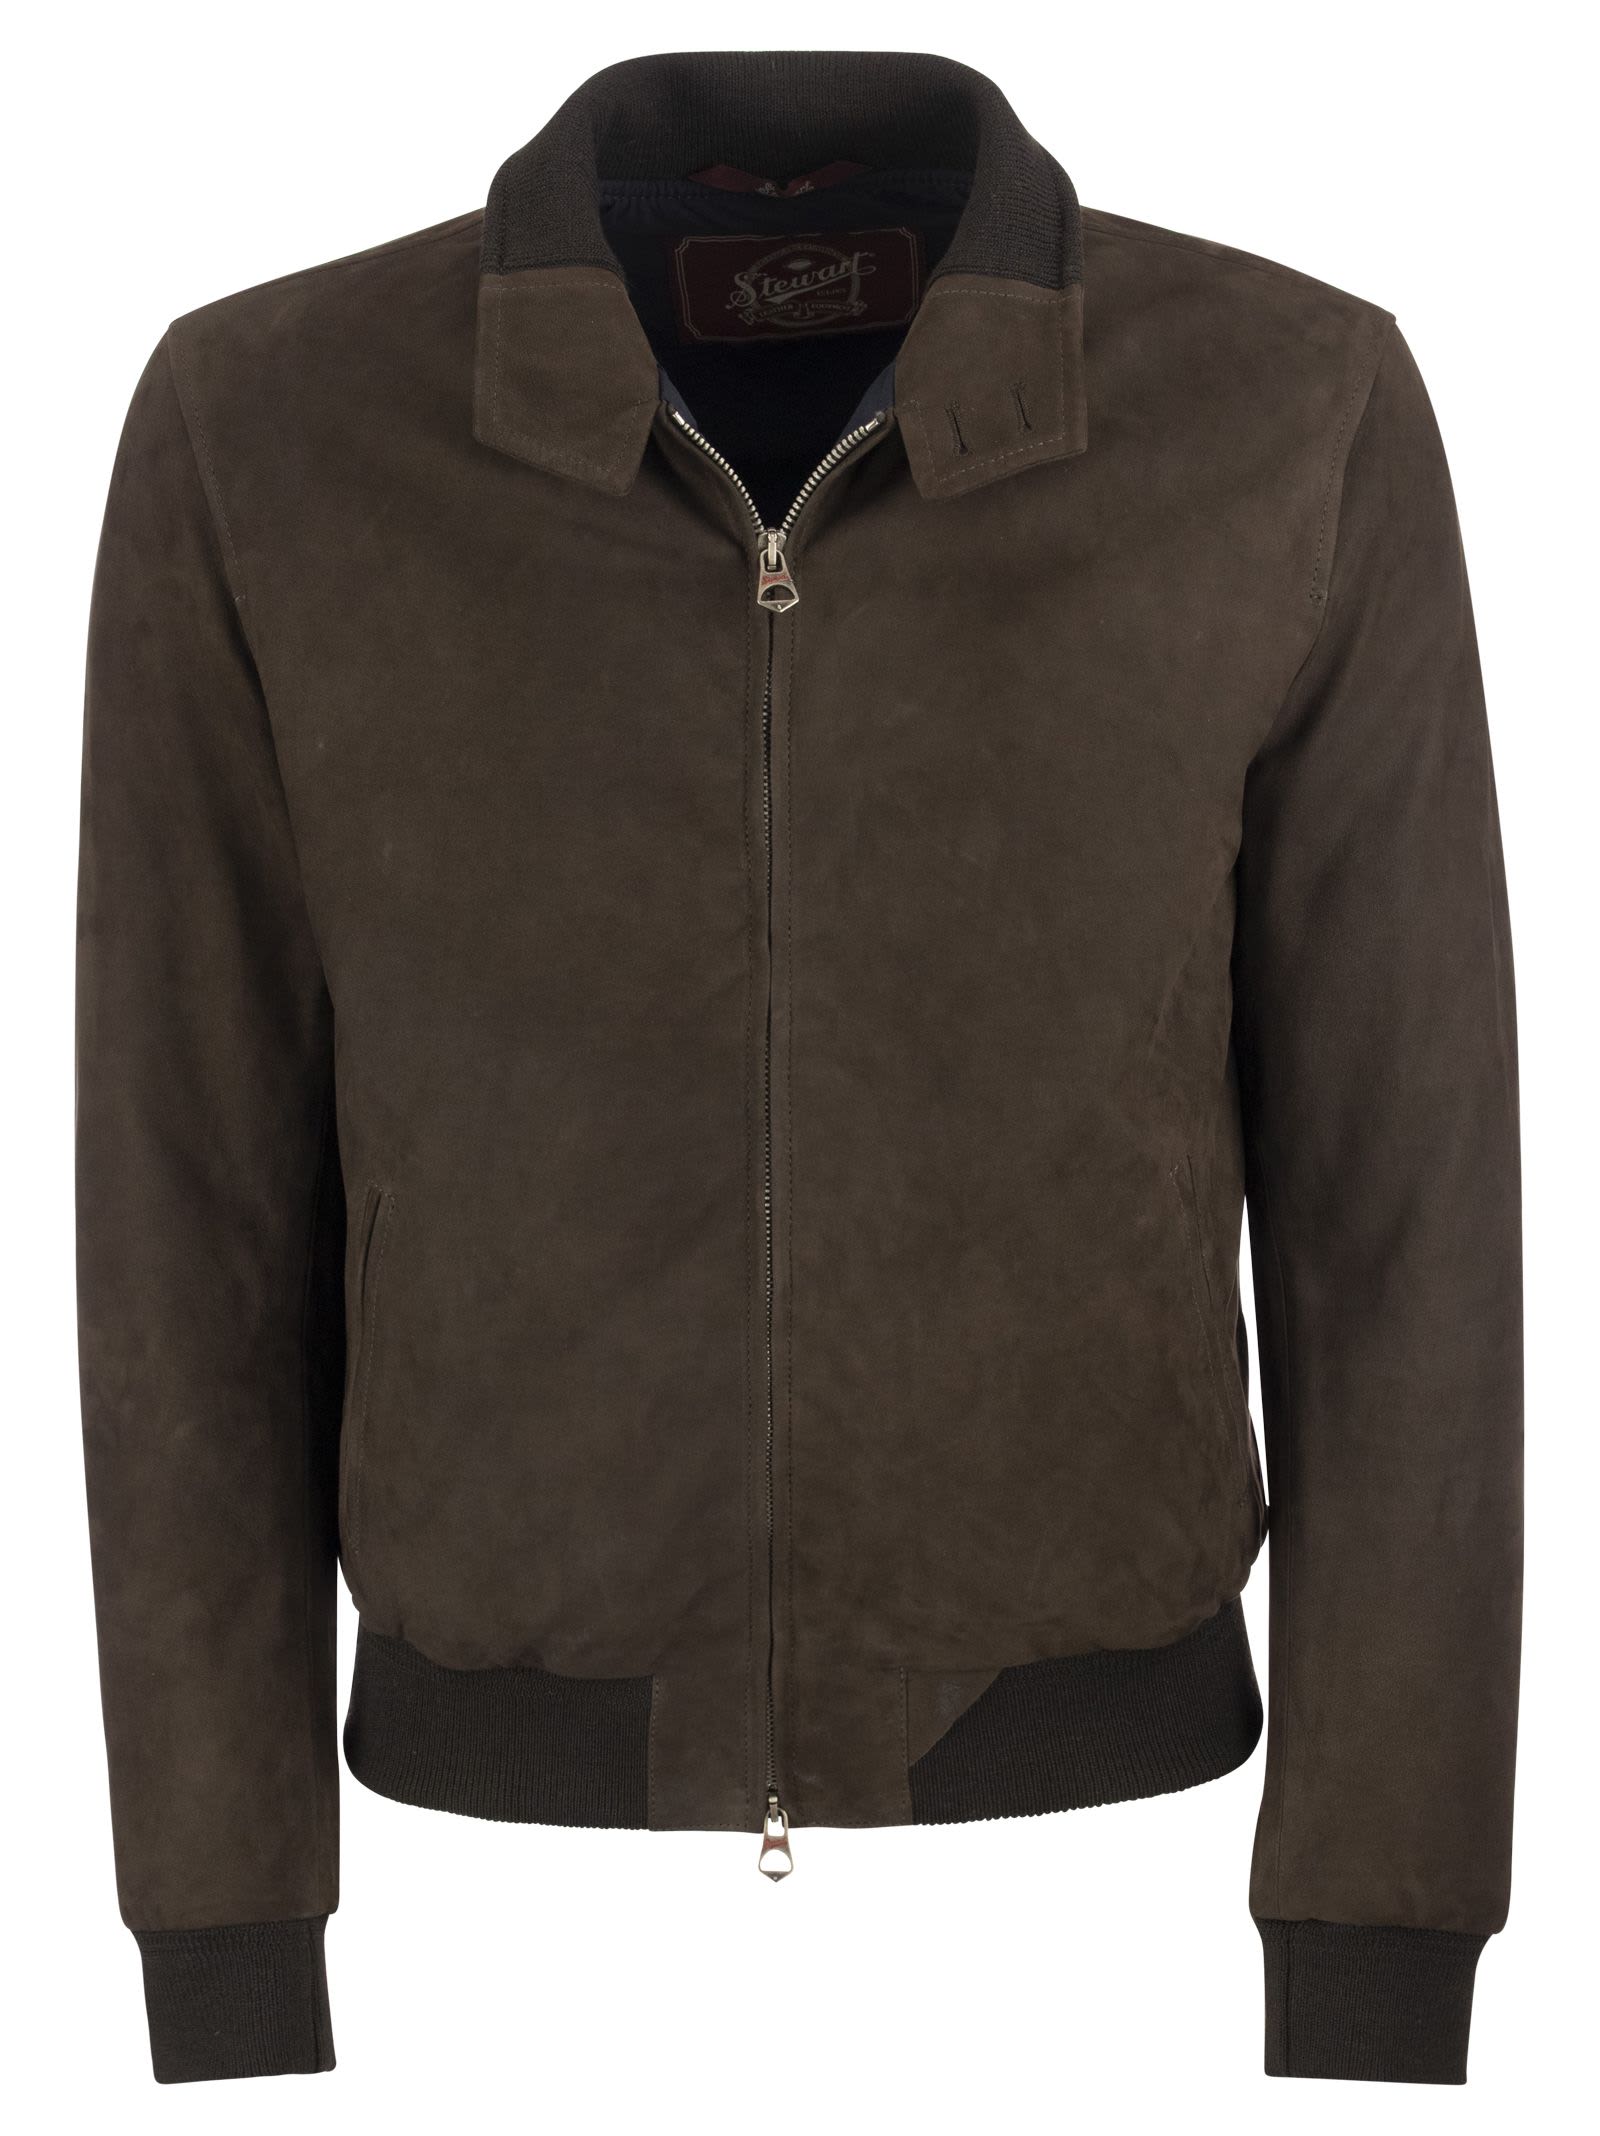 Stewart Suede Leather Jacket